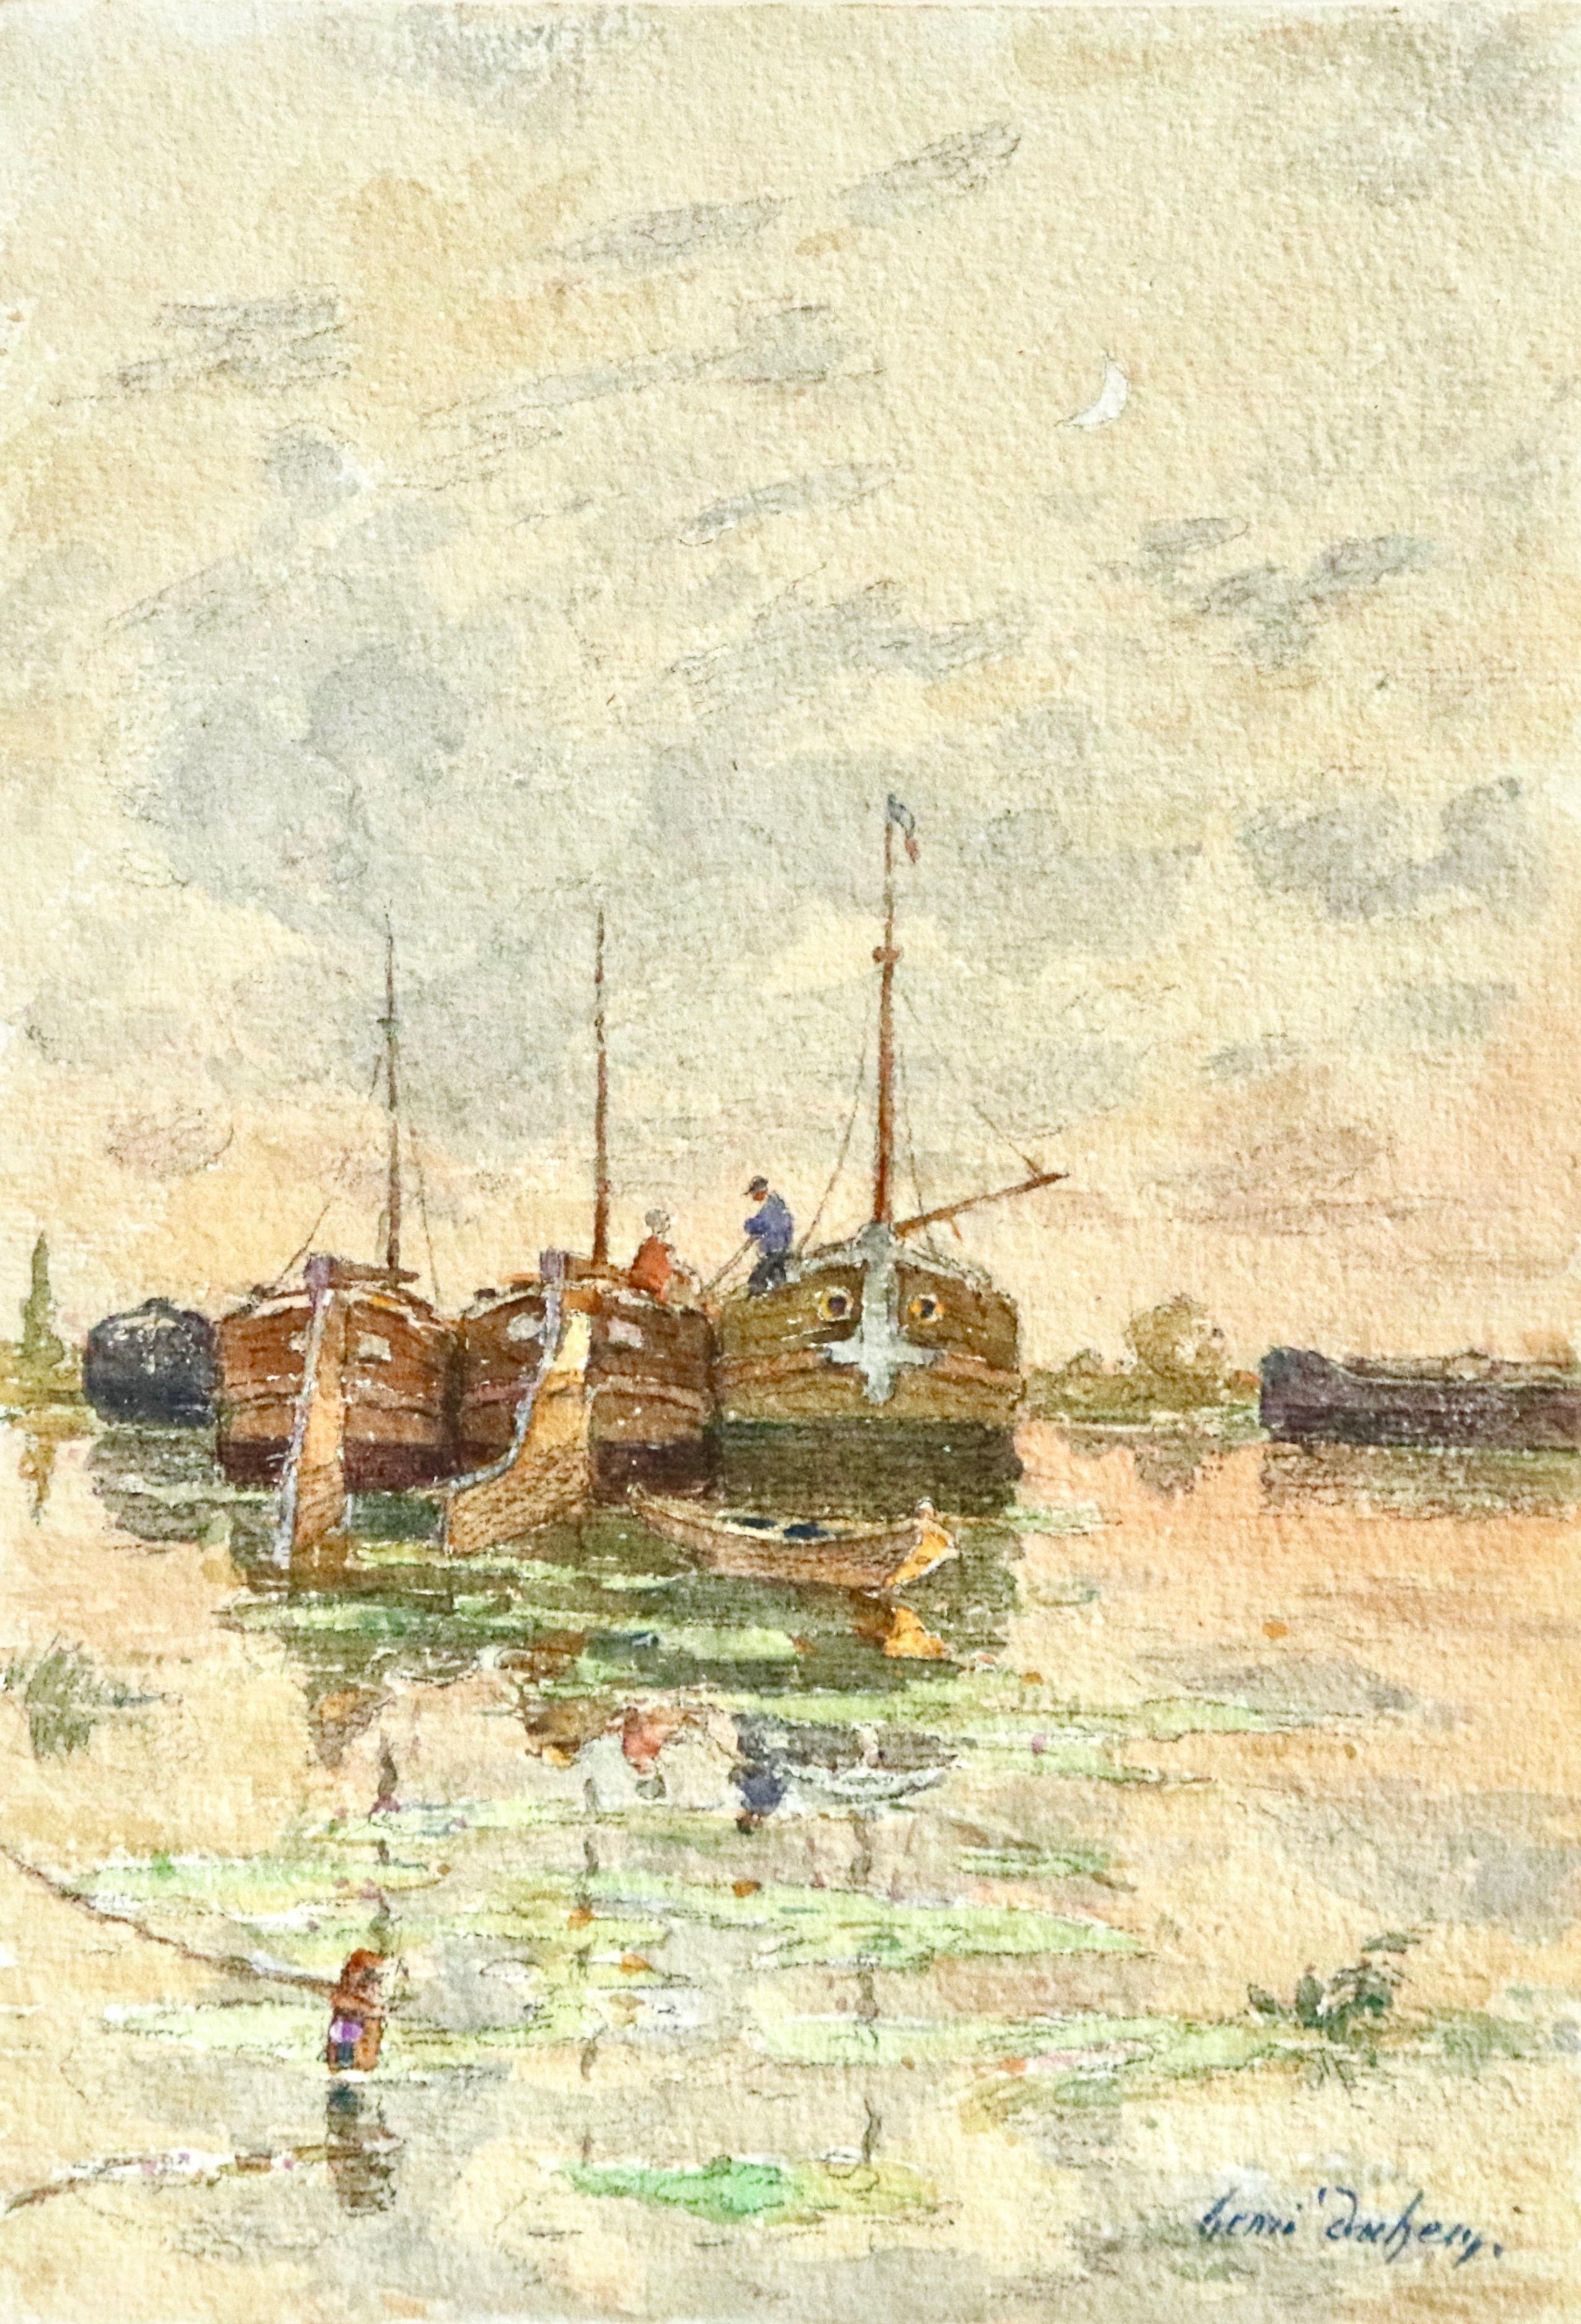 Aquarell auf Papier um 1910 von Henri Duhem mit Figuren auf Booten auf dem Fluss, deren Spiegelungen sich im Wasser spiegeln, und einer Mondsichel am Himmel. Signiert unten rechts. Dieses Gemälde ist derzeit nicht gerahmt, aber ein passender Rahmen